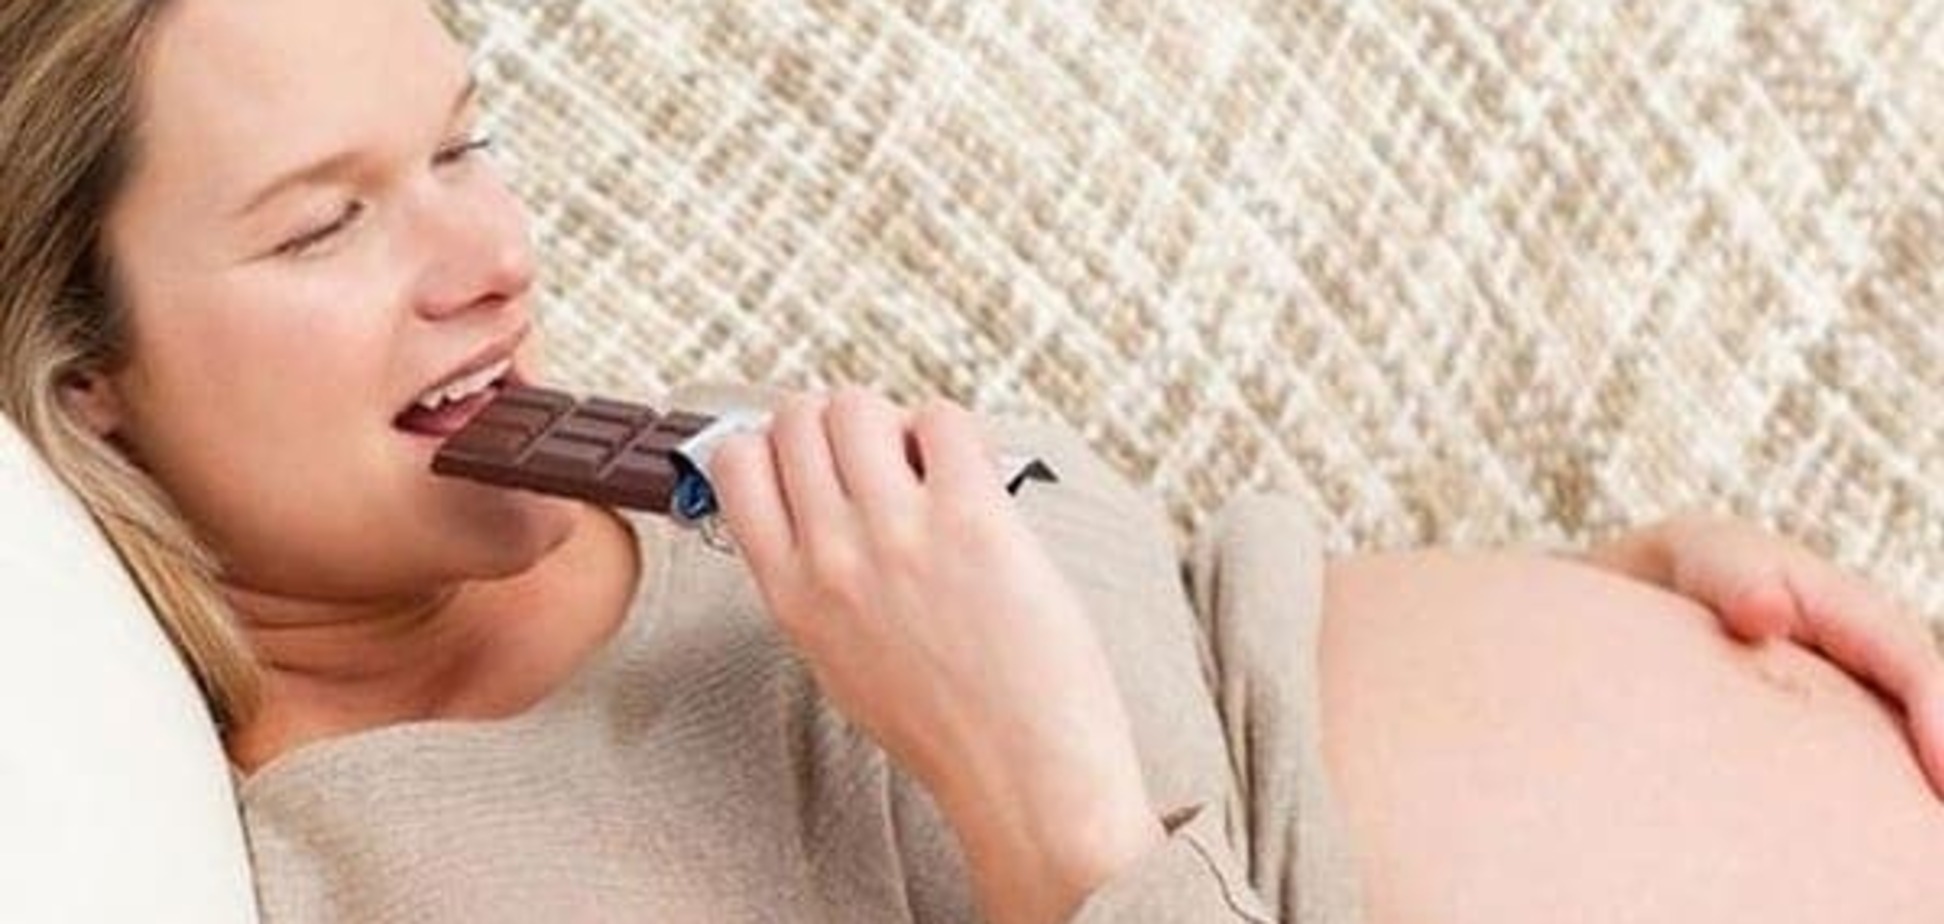 Шоколад полезен для здоровья будущей мамы - ученые